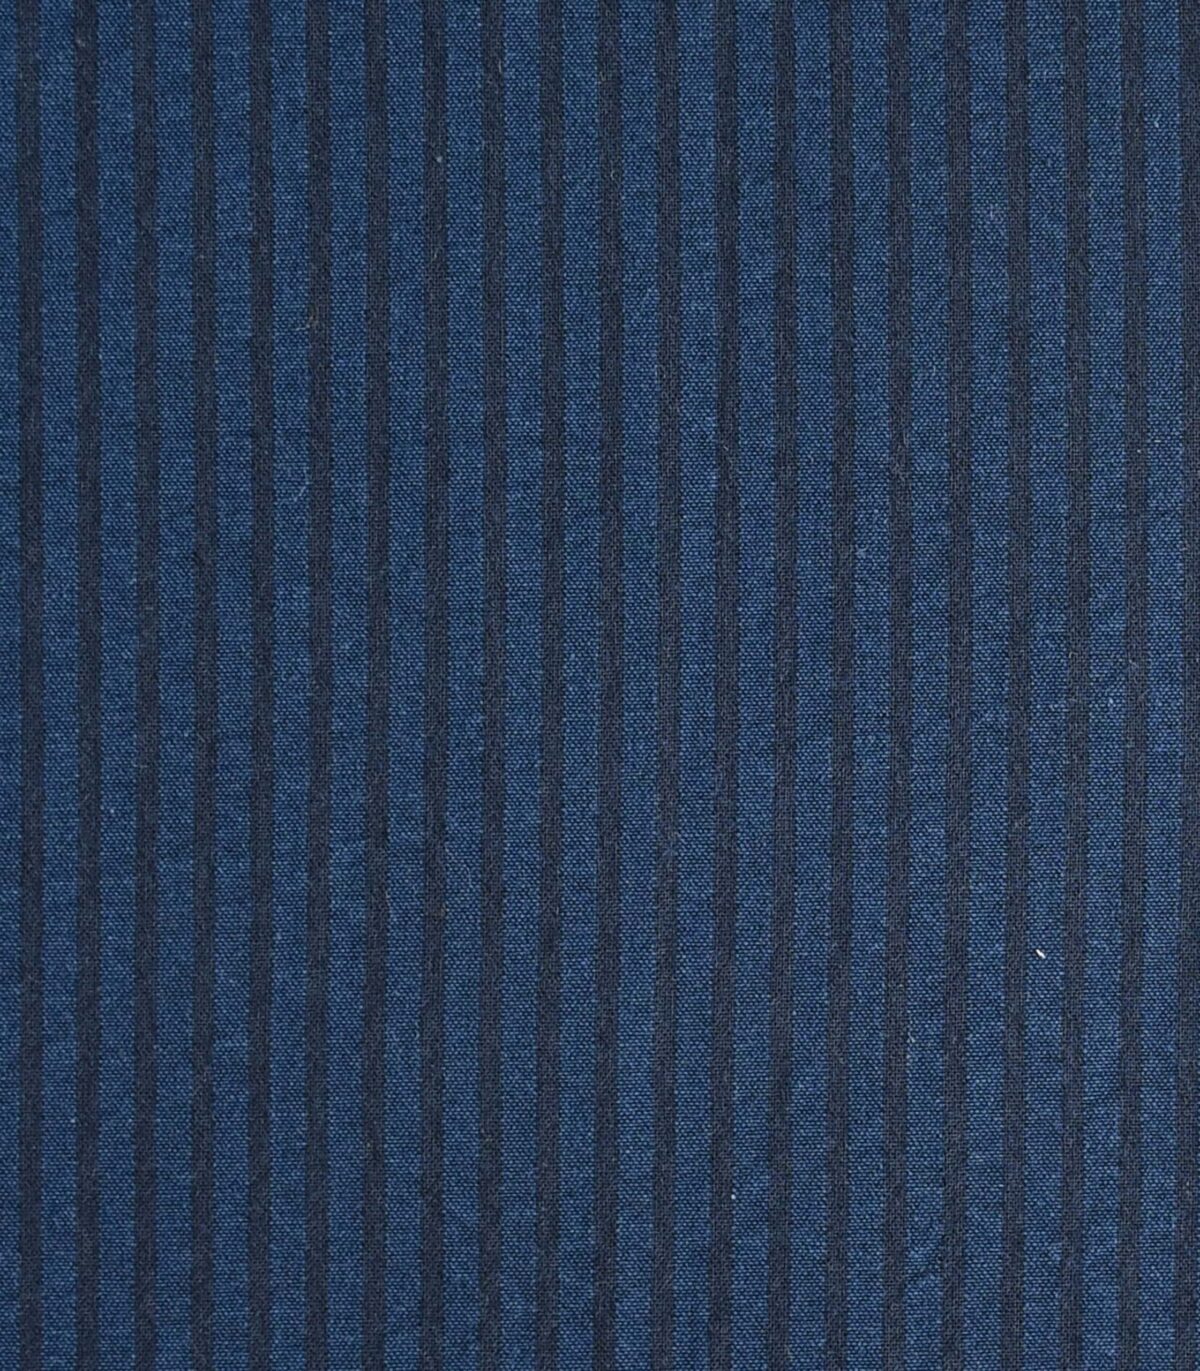 Cotton Navy Stripe Seersucker Dyed Fabric